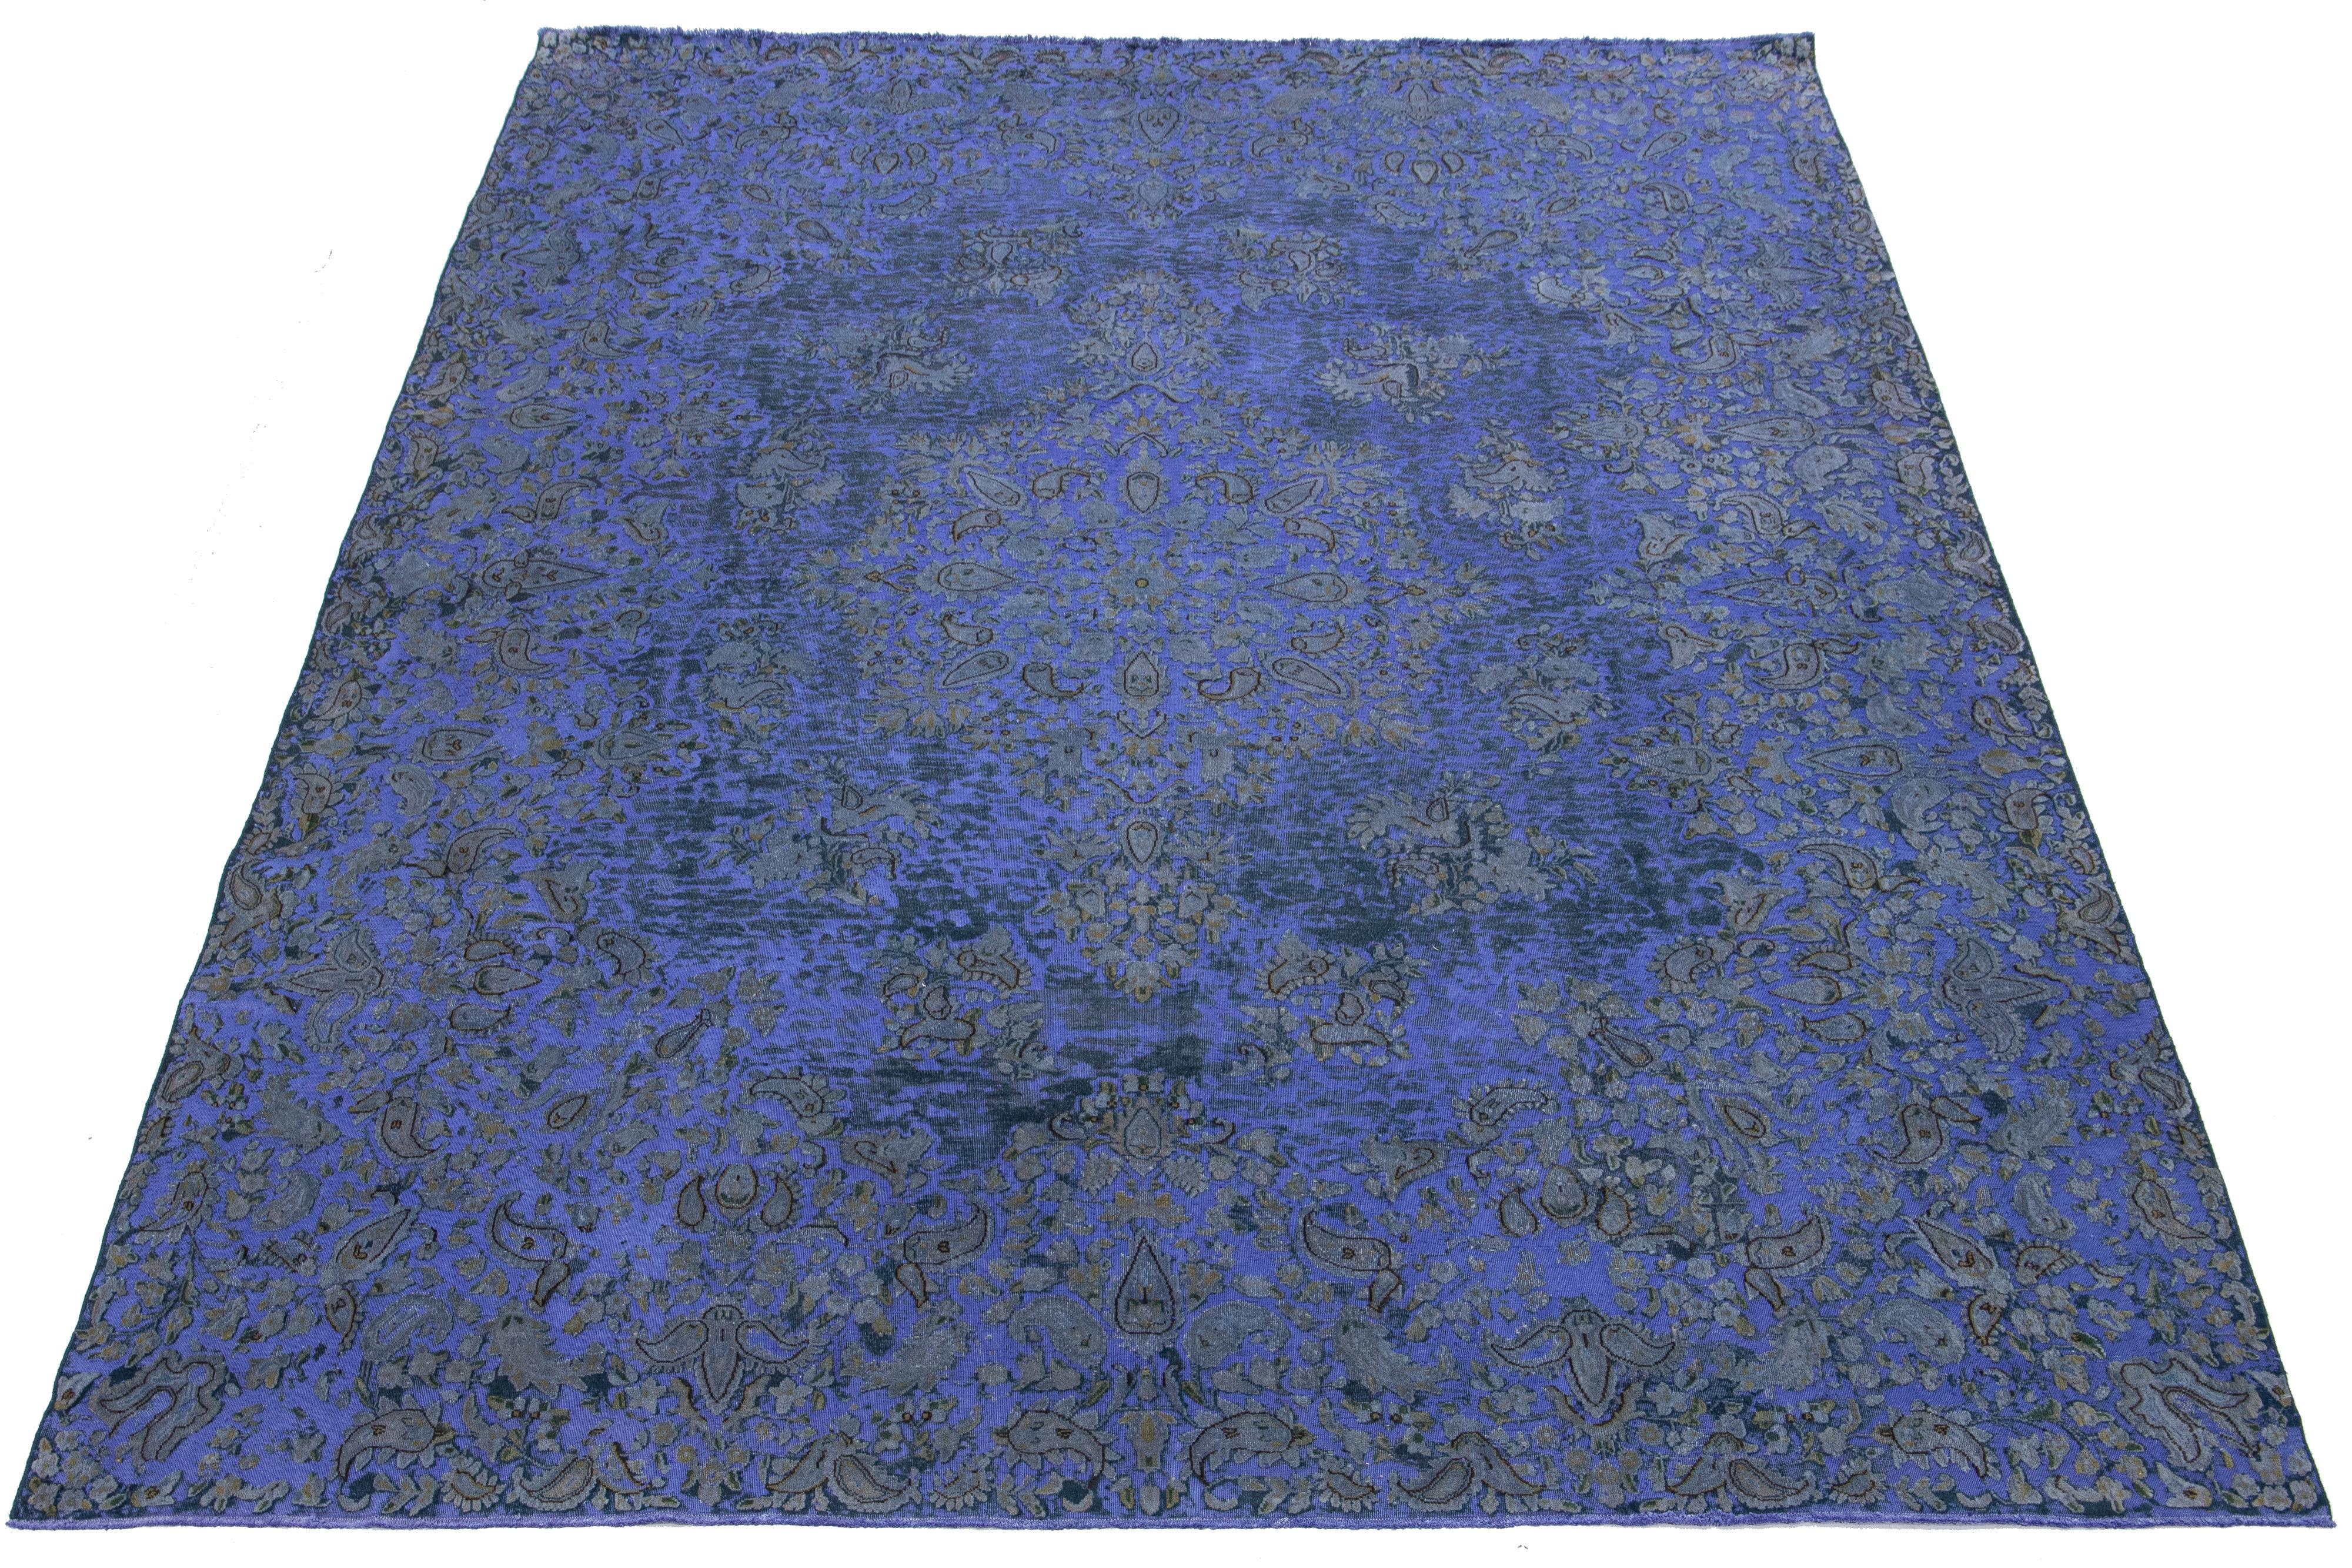 Ce tapis ancien en laine persane surteinte Iris Purple présente un motif de rosette avec des accents beiges et gris.

Ce tapis mesure 9'8'' x 13'10